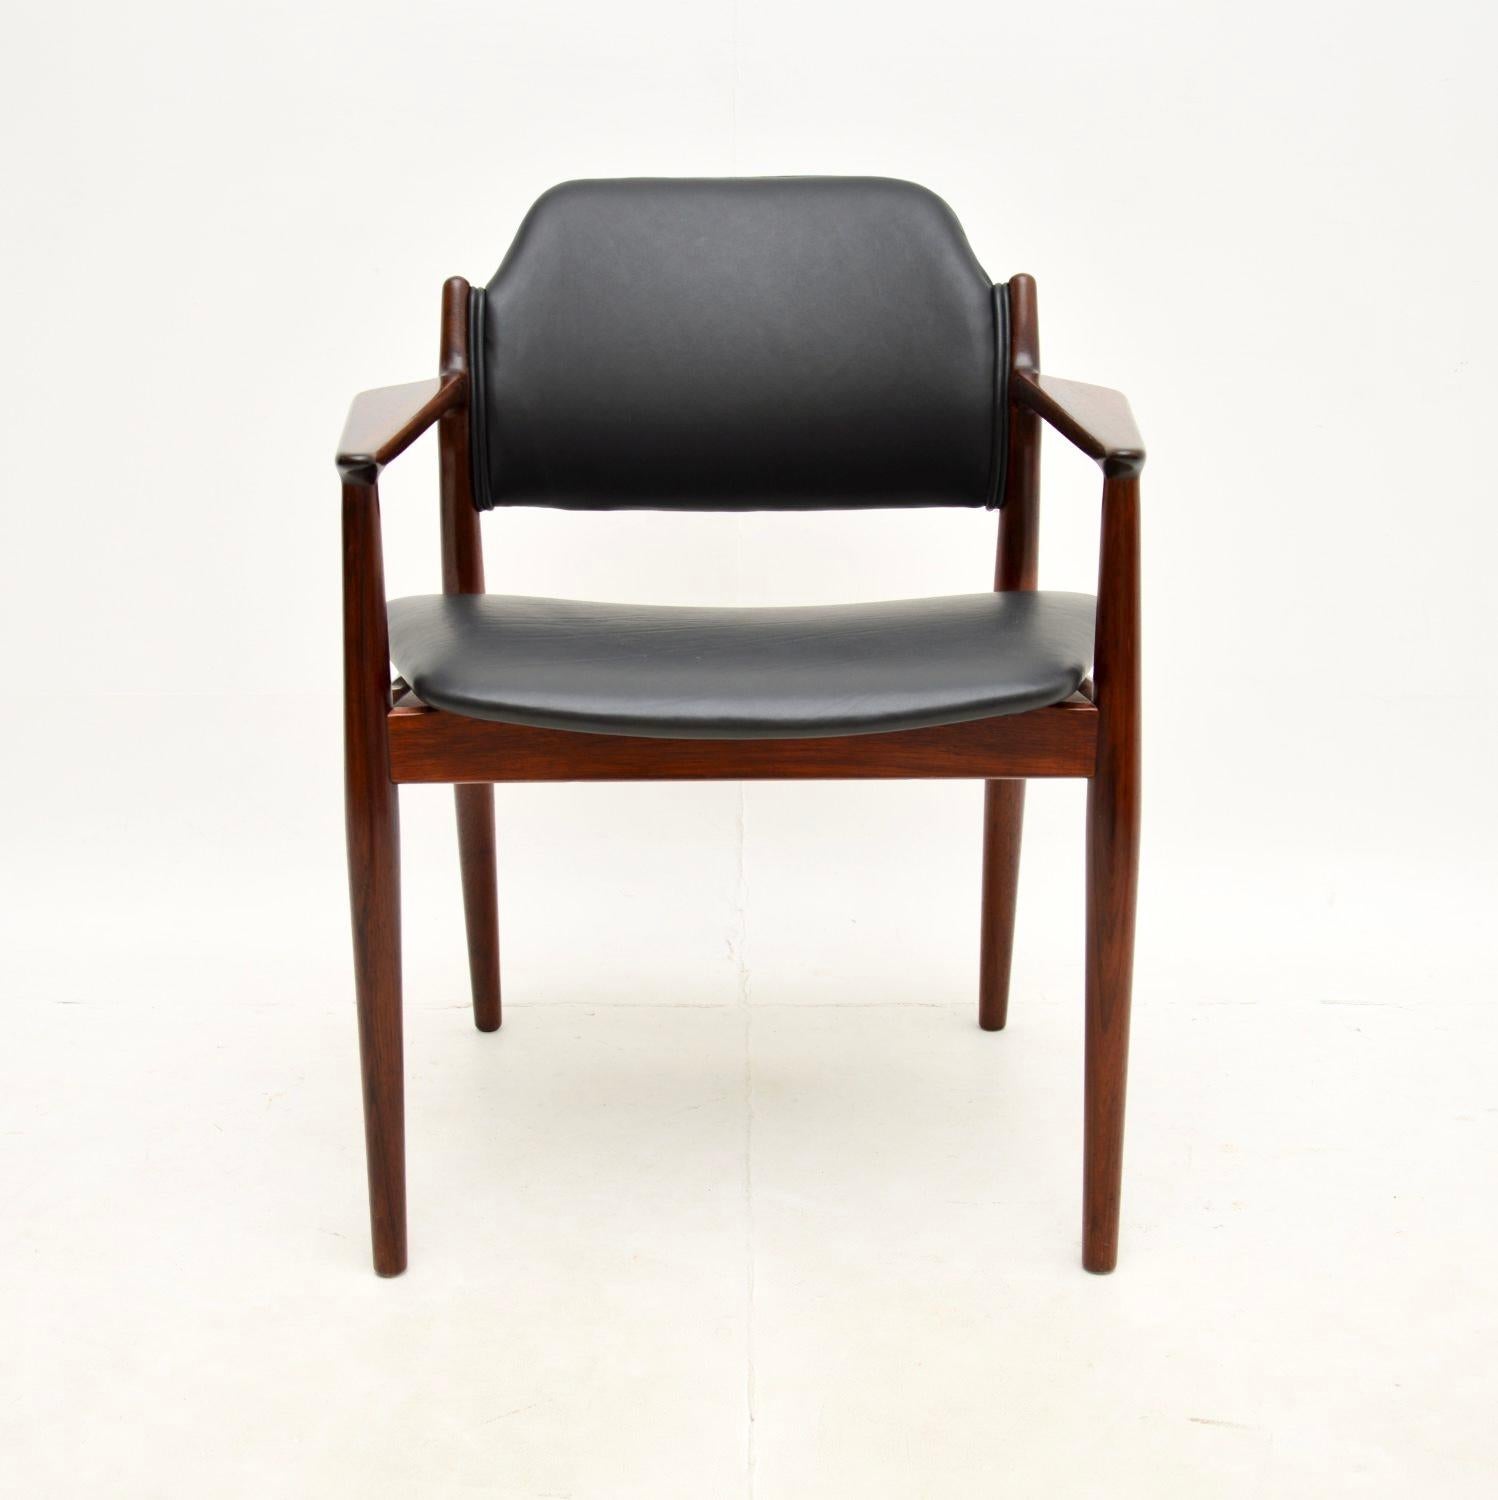 Un superbe et rare fauteuil en cuir danois vintage d'Arne Vodder. Fabriqué au Danemark par Sibast, il date des années 1960.

Il s'agit du modèle 62a, d'une qualité absolument superbe et très confortable. Le cadre est magnifiquement conçu avec des